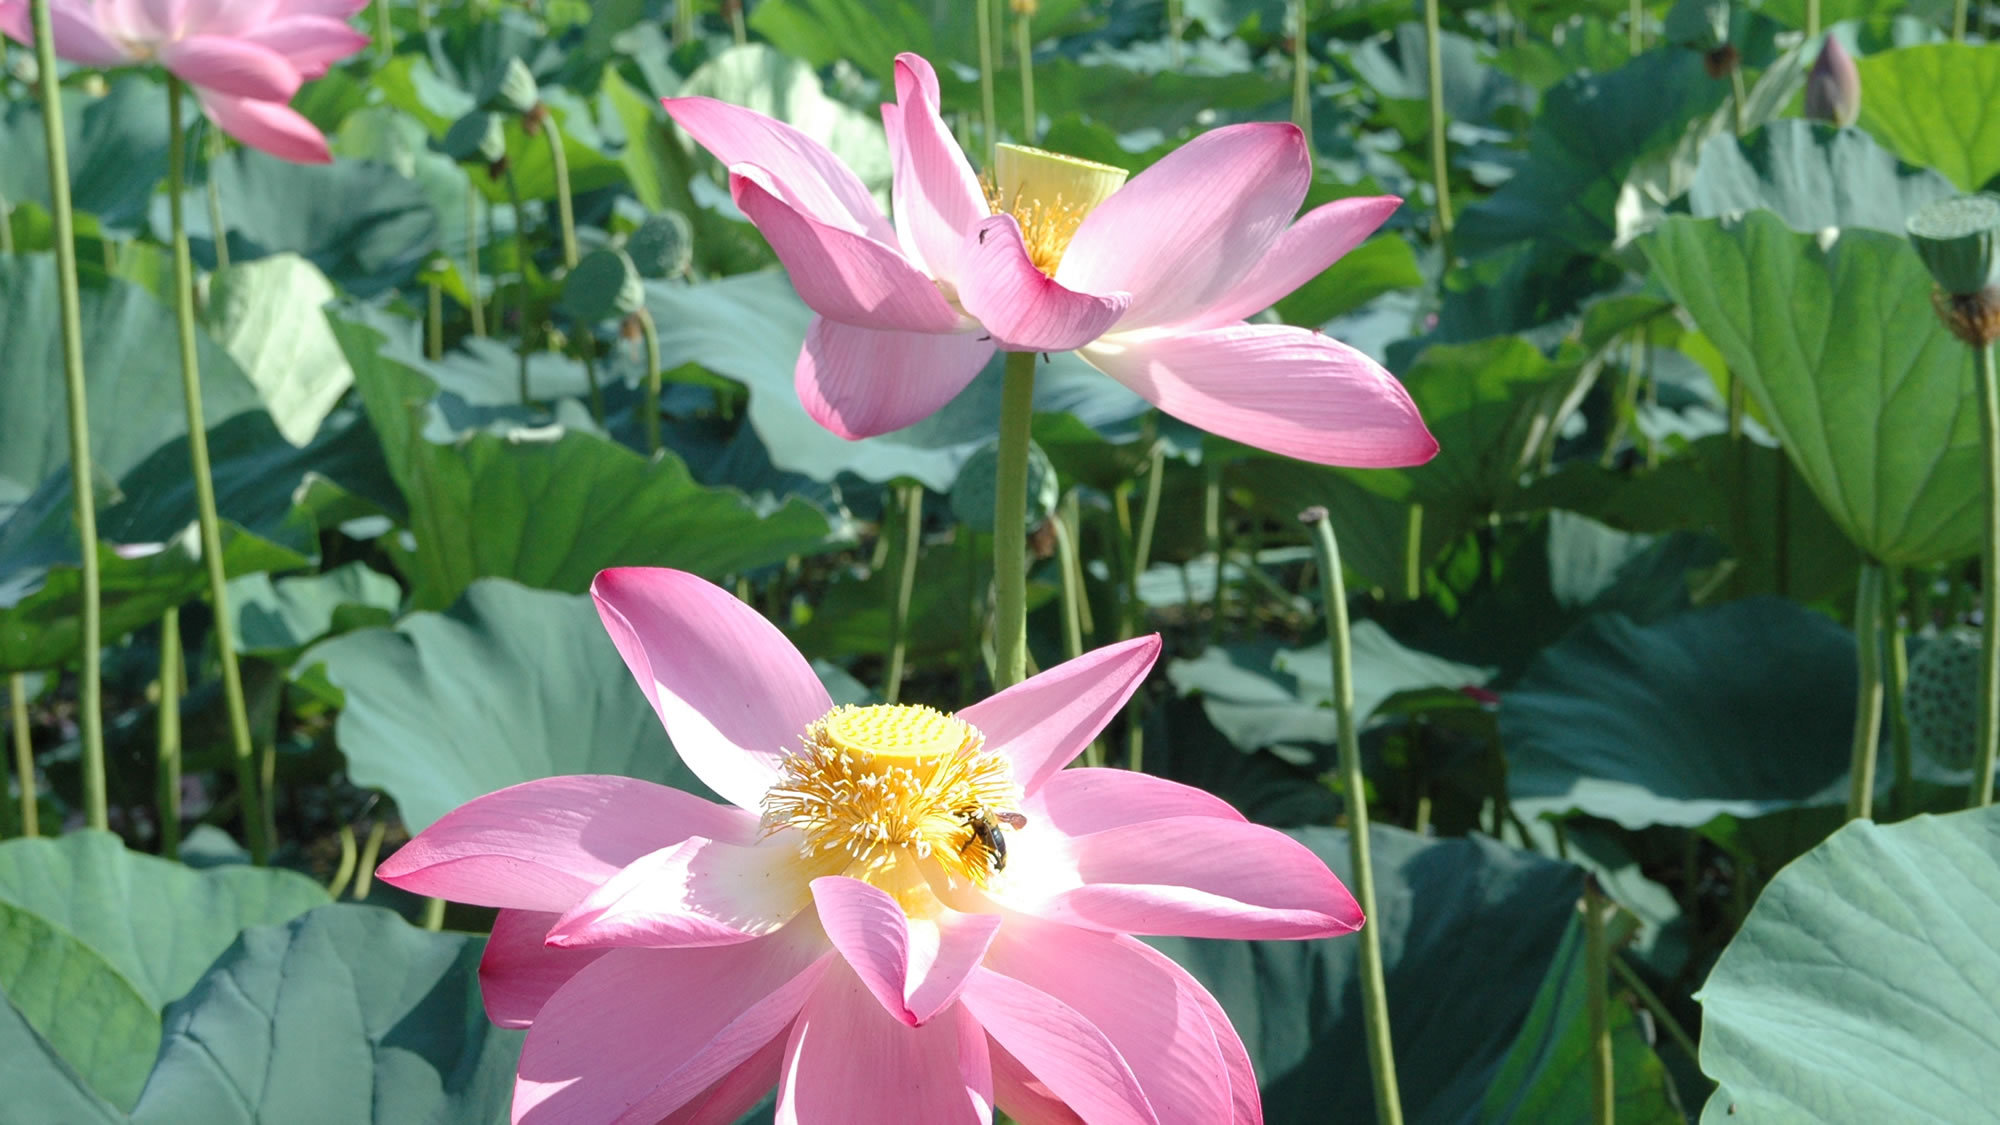 【瓢湖】夏には美しい蓮の花が咲き乱れます